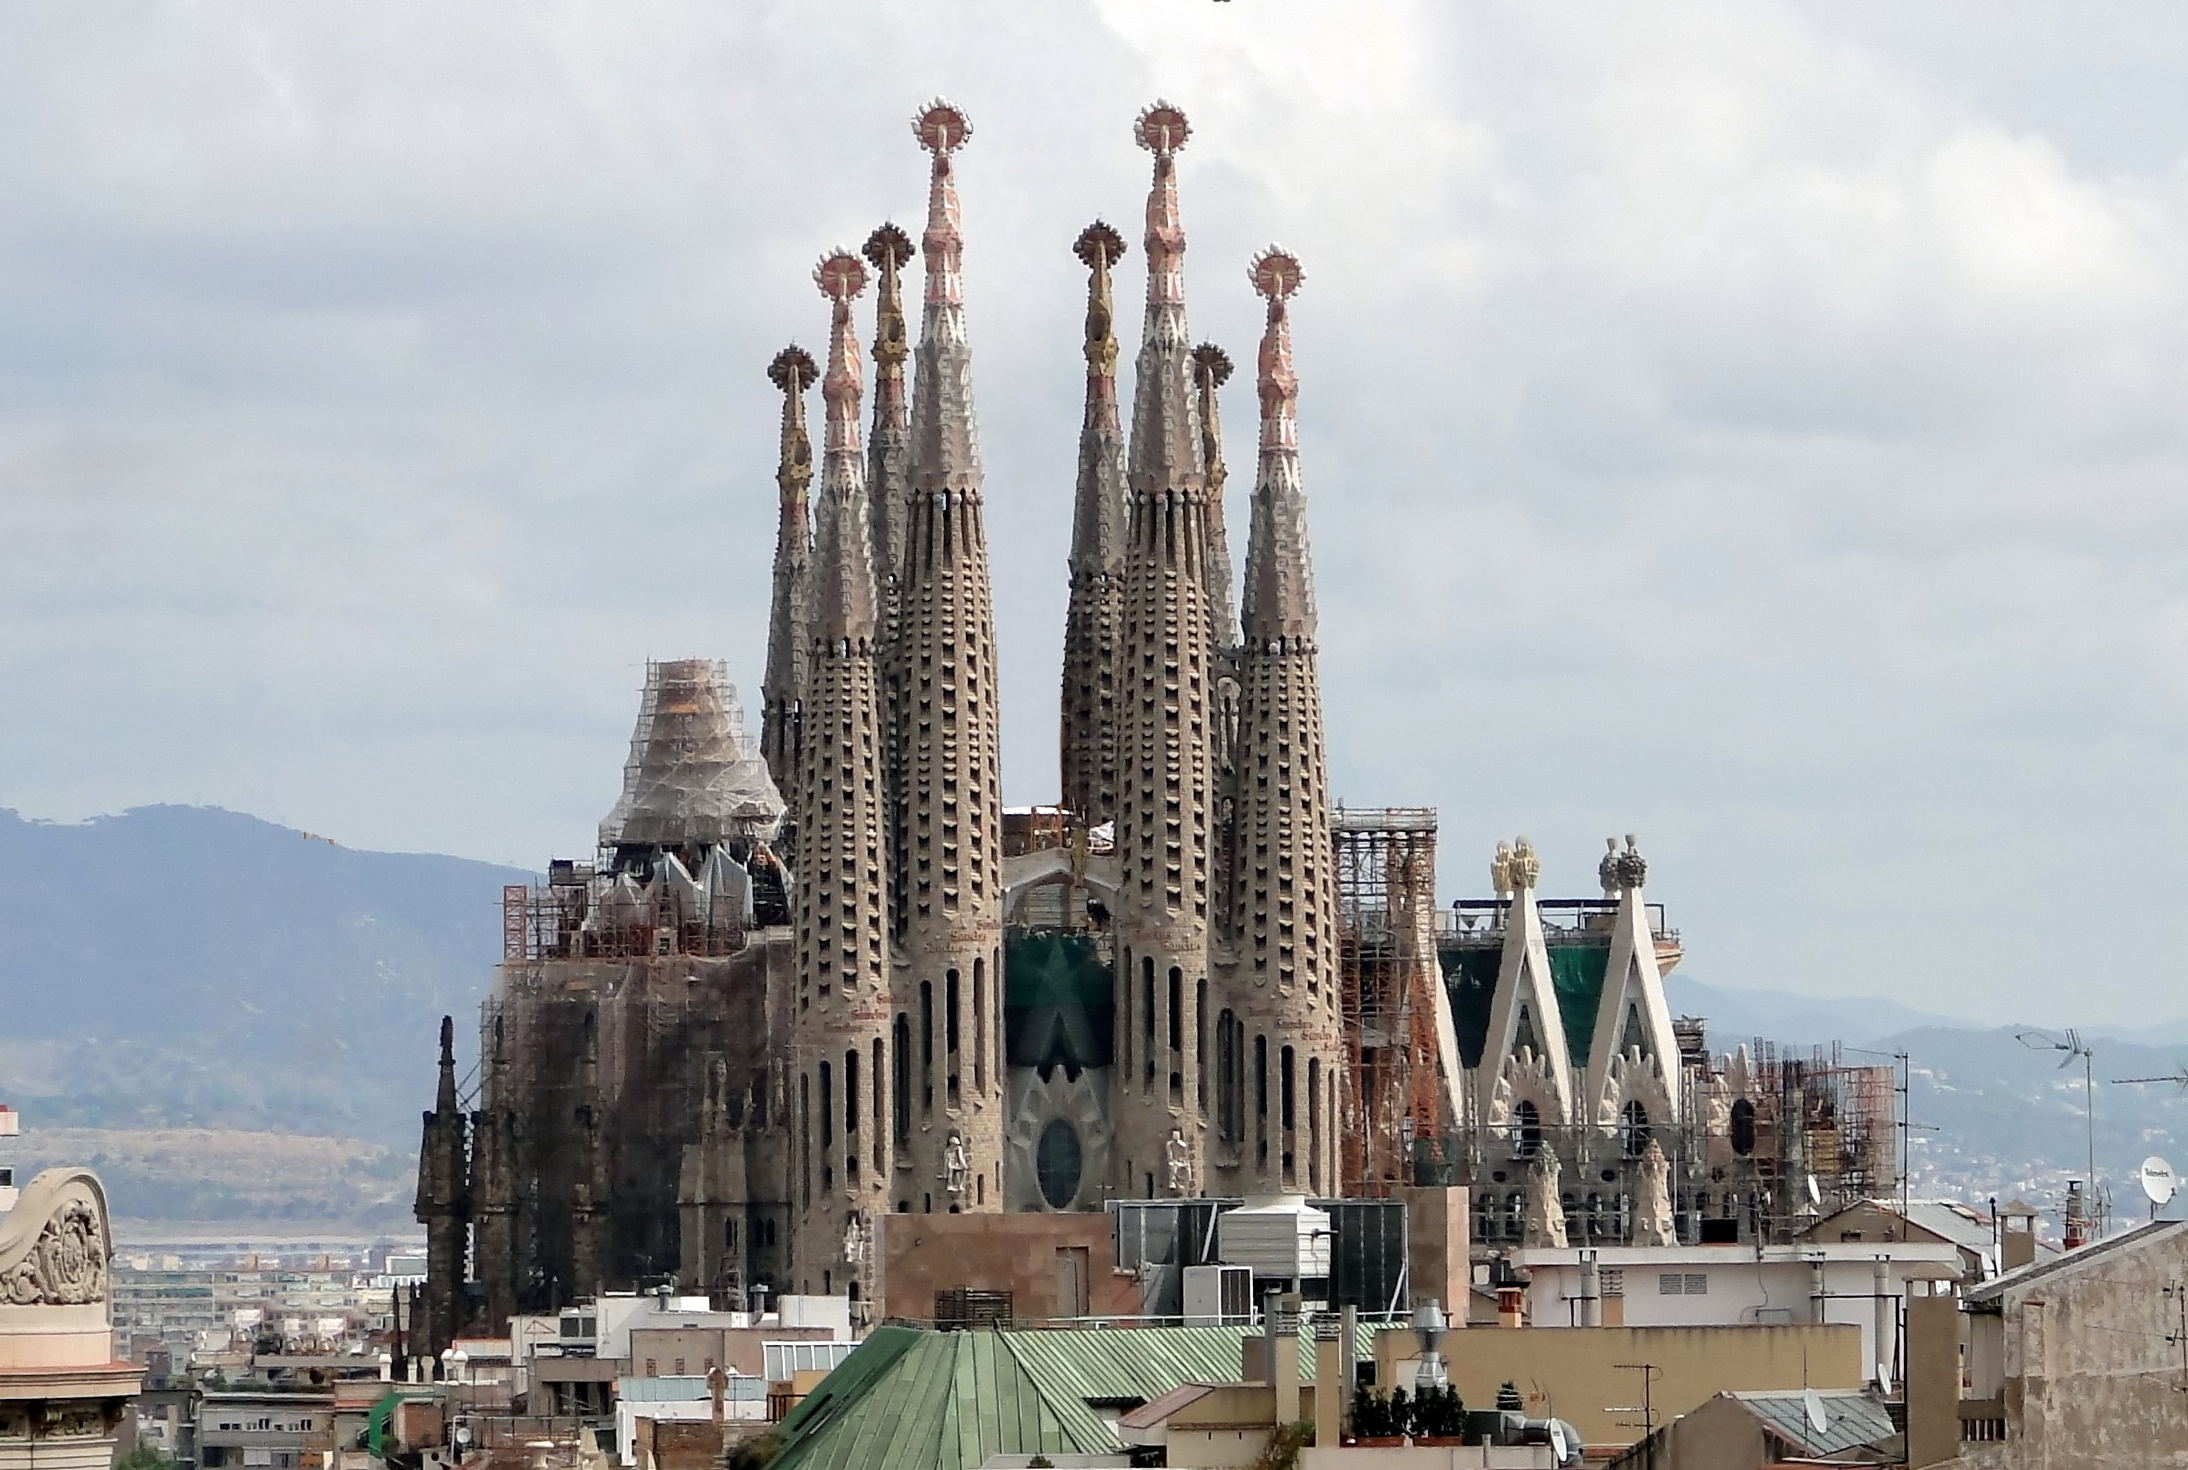 La Sagrada Familia II - Gaudi - Barcelona